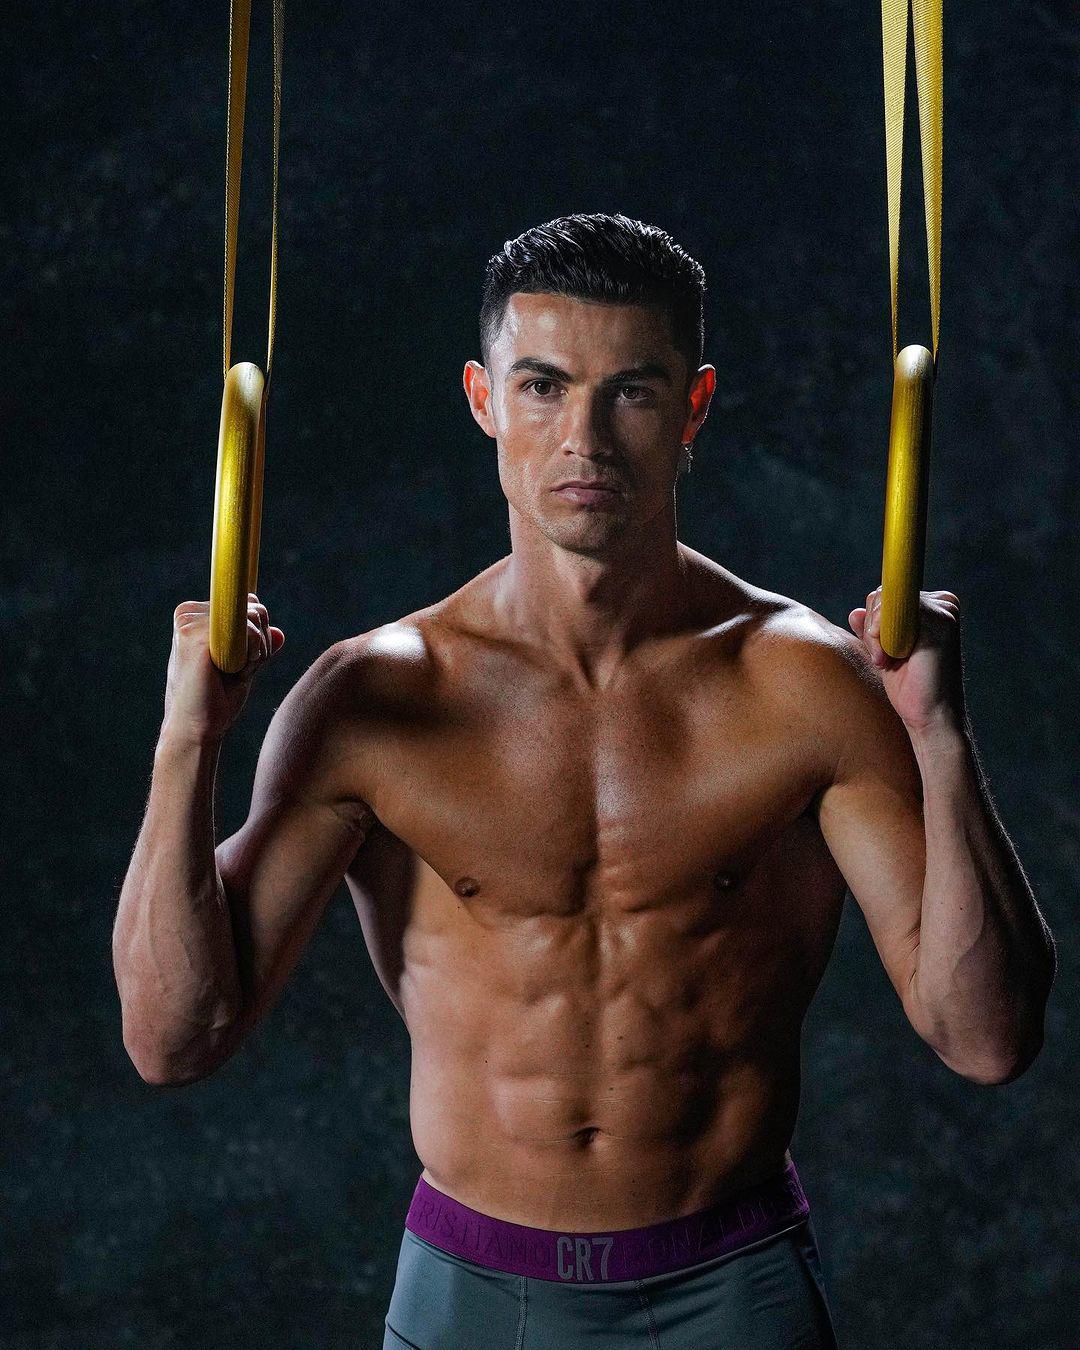 Cristiano&nbsp;Ronaldo chăm chỉ rèn luyện để body ngày càng khỏe đẹp.